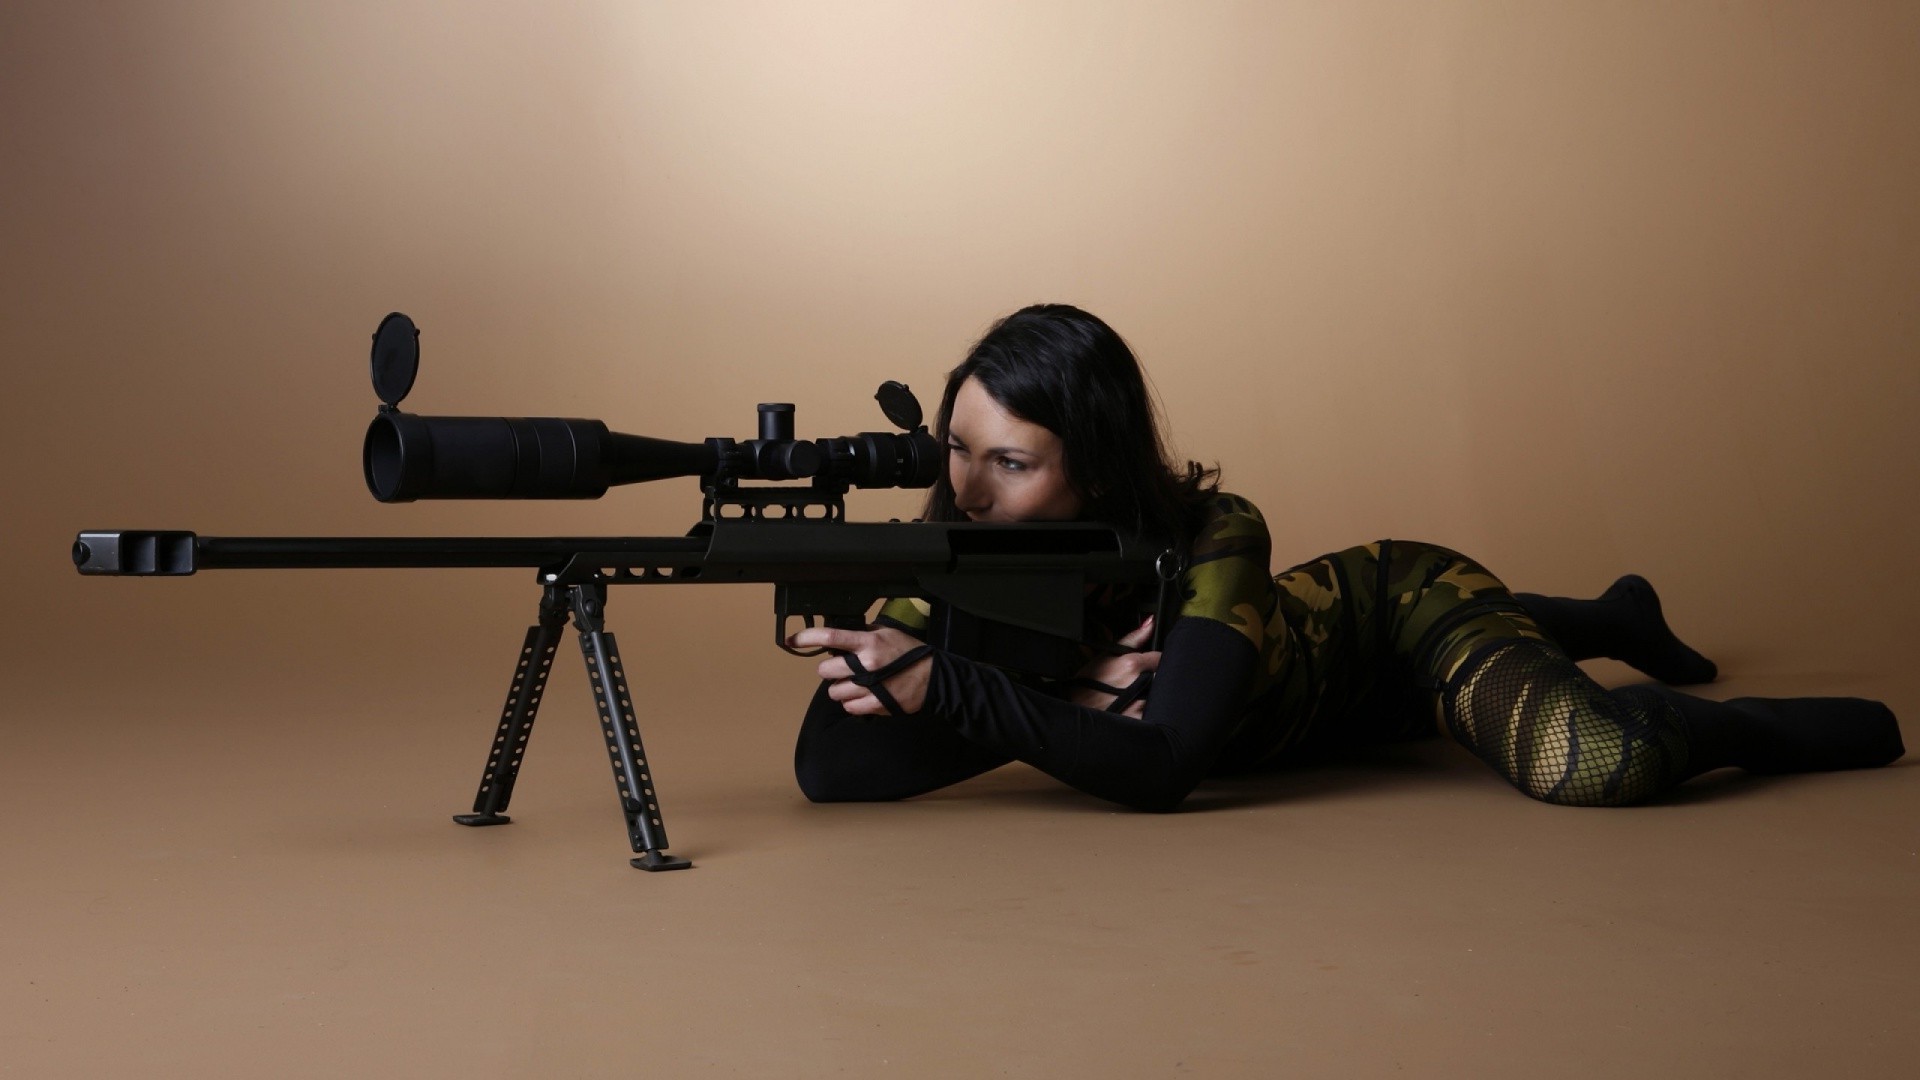 Gun, Barrett - Women With Sniper Rifle - HD Wallpaper 